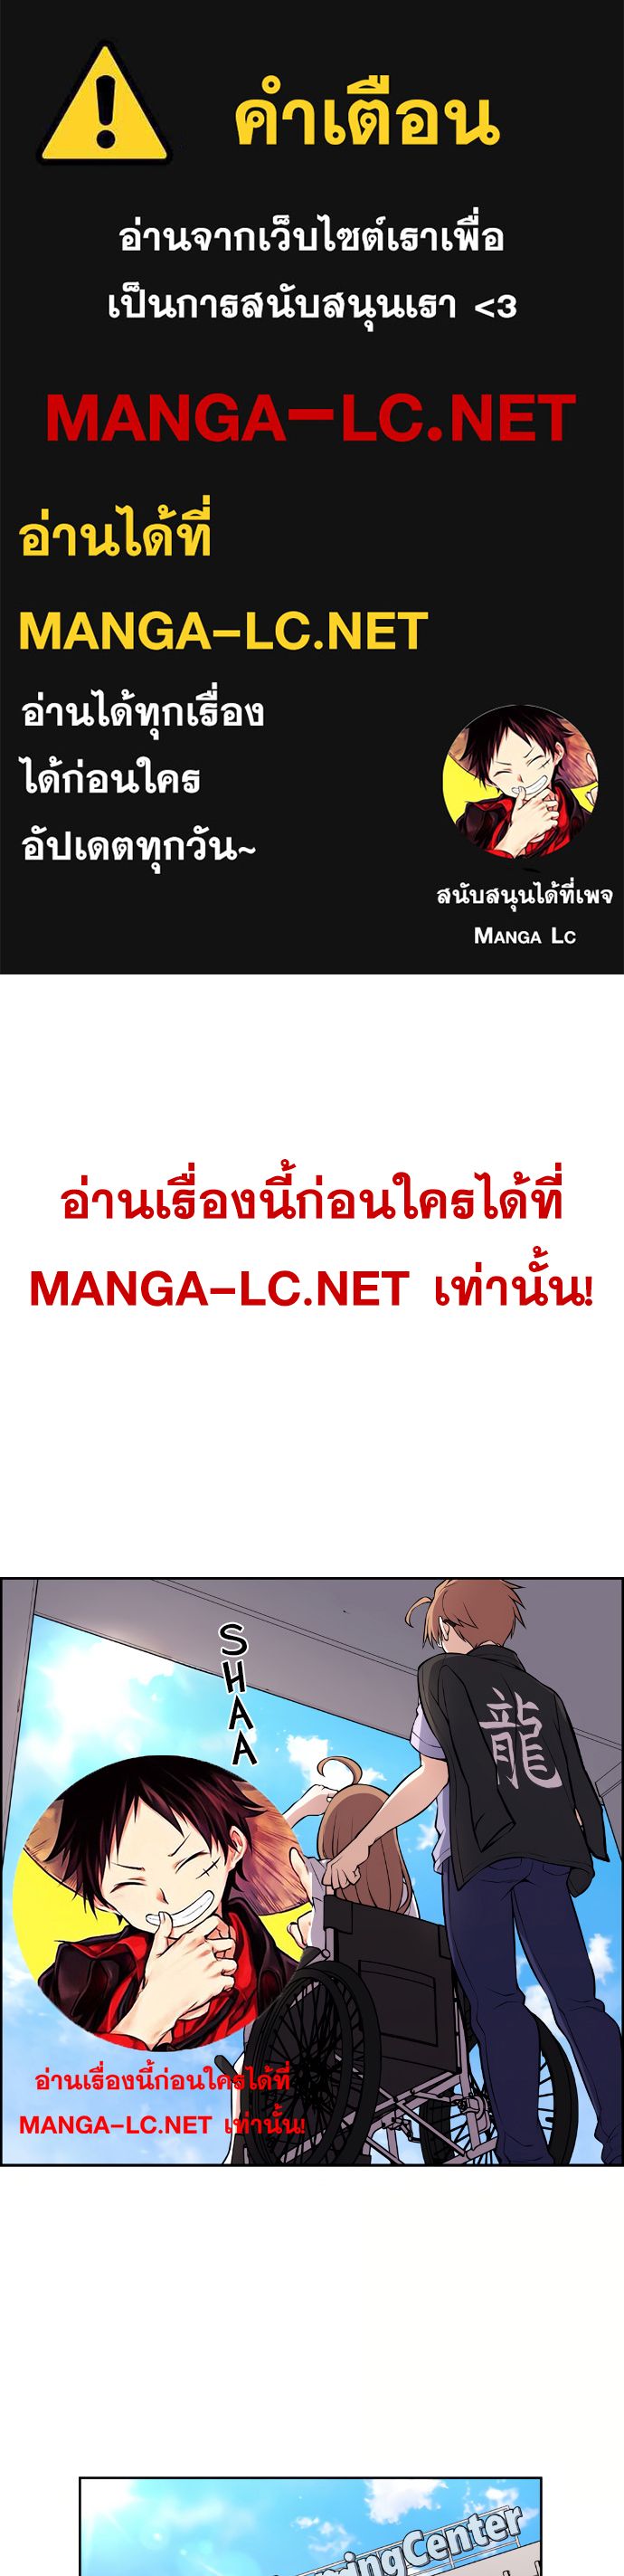 Webtoon Character Na Kang Lim ตอนที่ 140 (1)